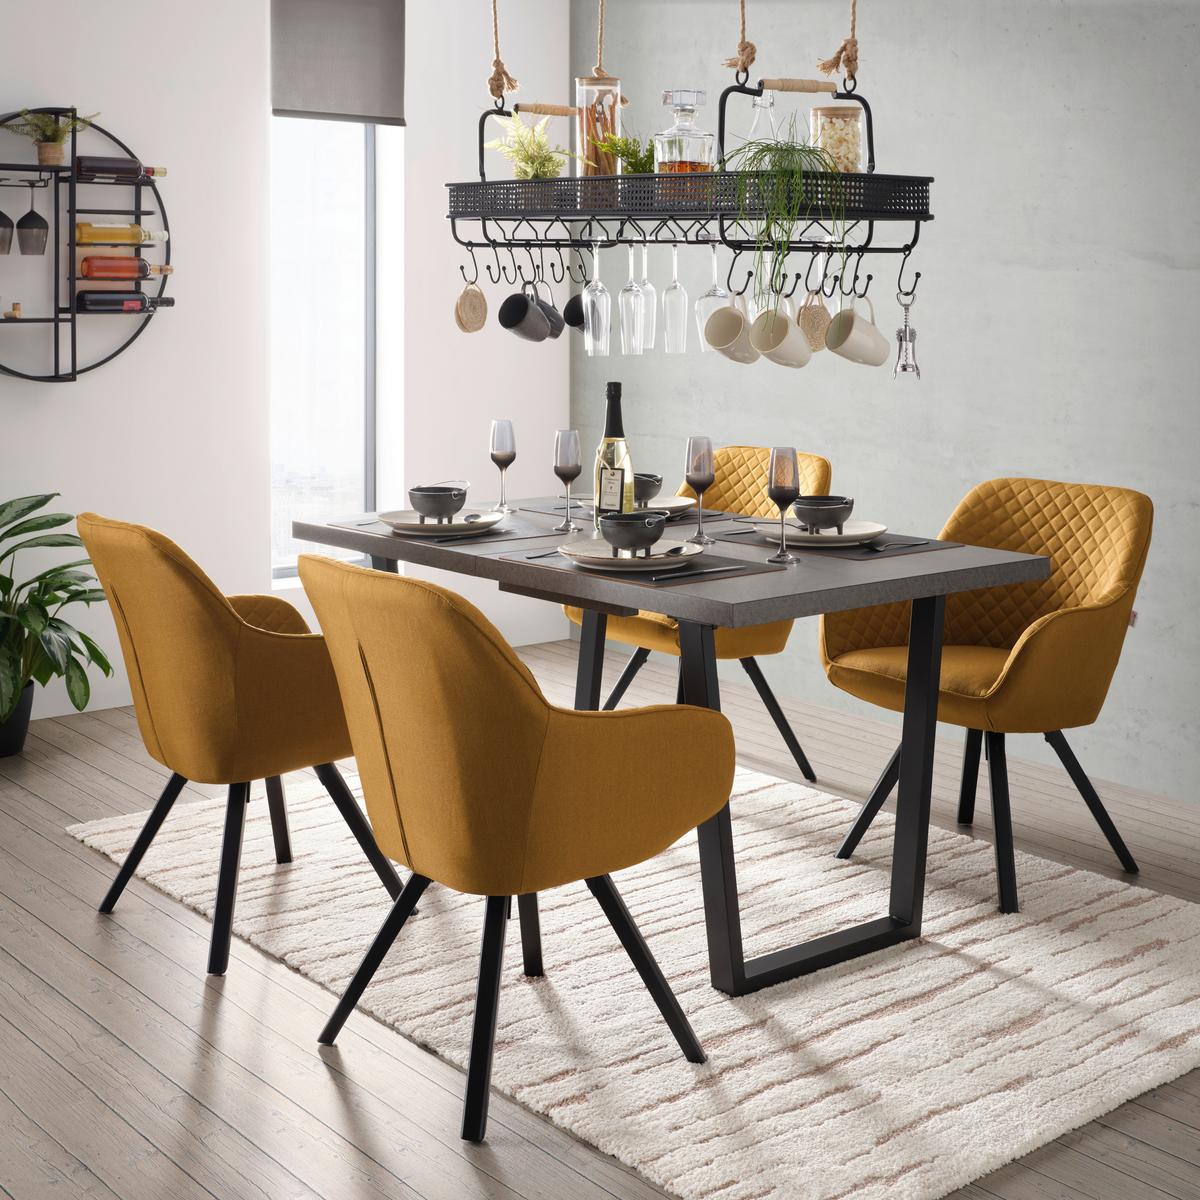 Kihúzható asztal NILS - Sötétszürke/Fekete, modern, Faalapú anyag/Fém (140-180/85/76cm) - Modern Living